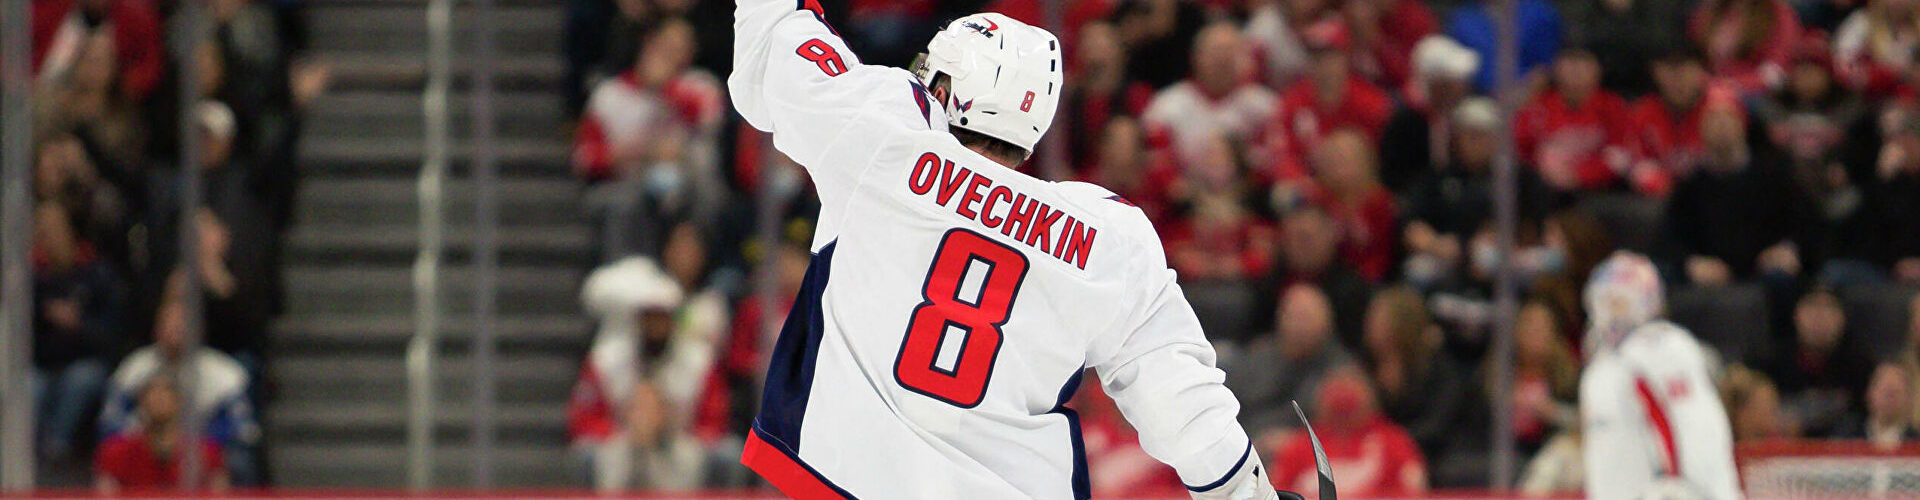 Овечкин стал третьим по ассистам среди россиян за всю историю НХЛ